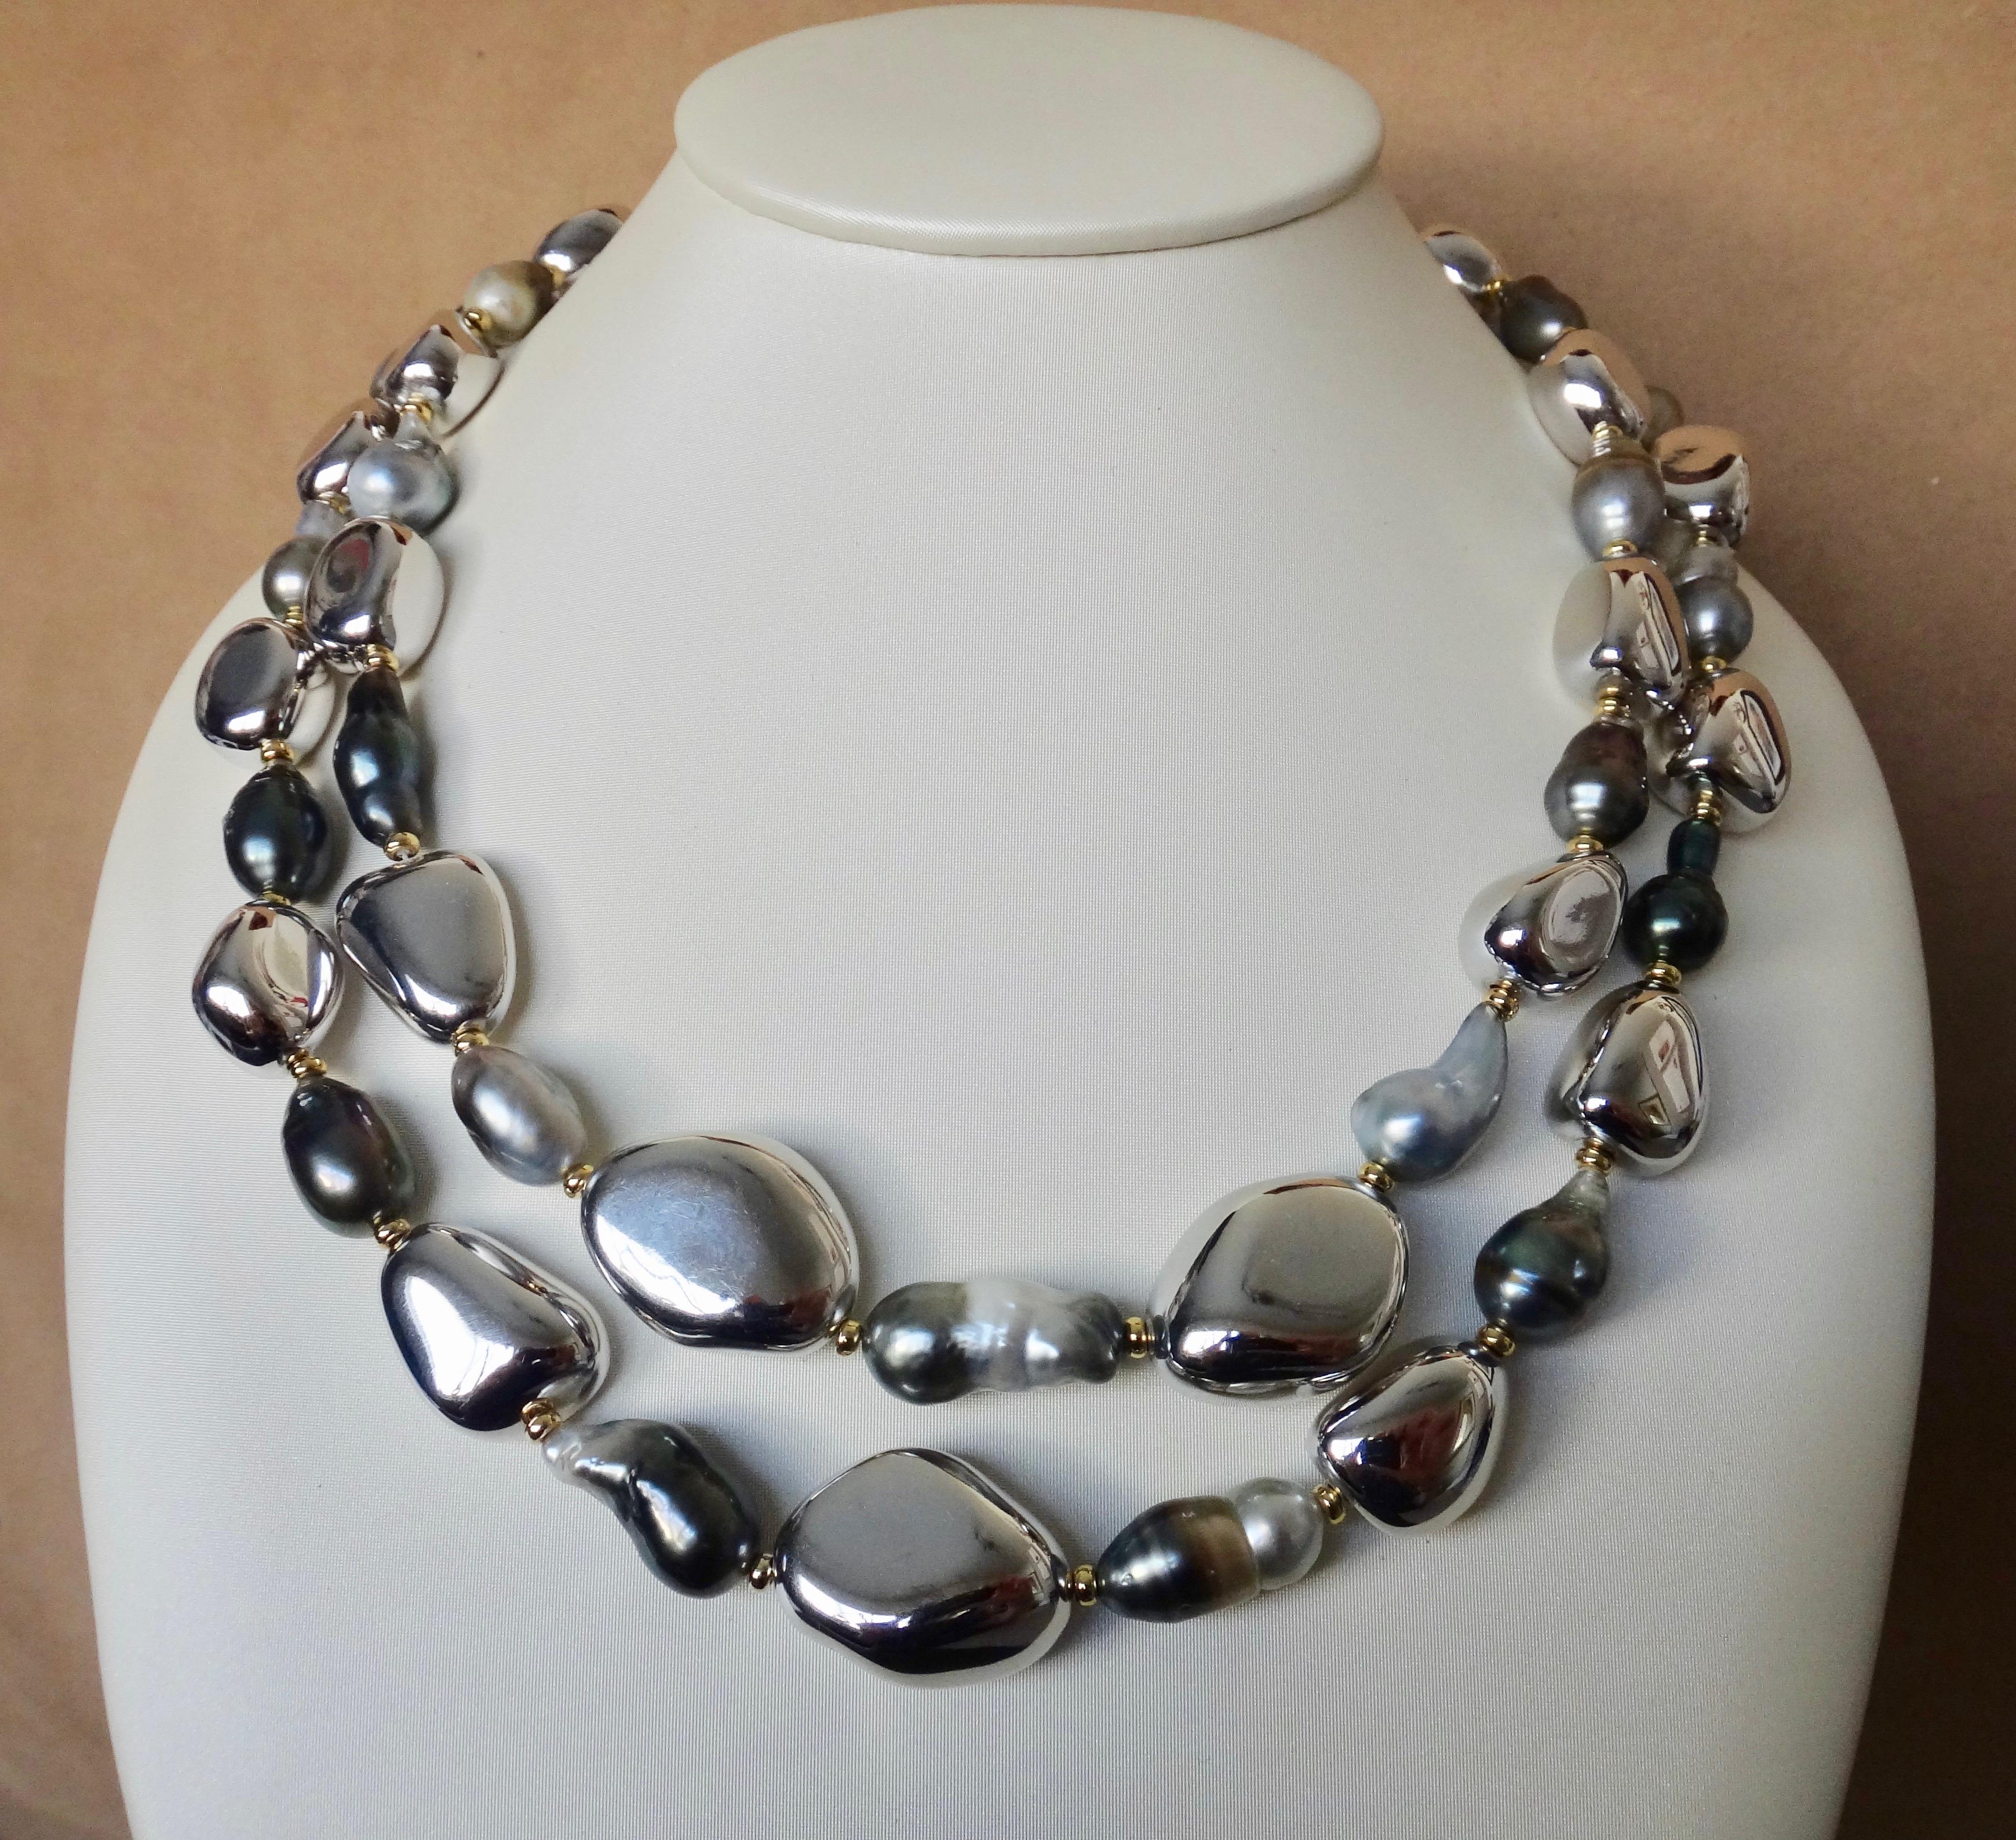 Barocke Tahiti-Perlen werden bei dieser kühnen und doch lässigen Halskette mit Kieselsteinperlen kombiniert.  Die Kollektion der mehrfarbigen Perlen reicht von fast weiß bis schwarz, manchmal auch innerhalb einer Perle.  Sie besitzen einen schönen